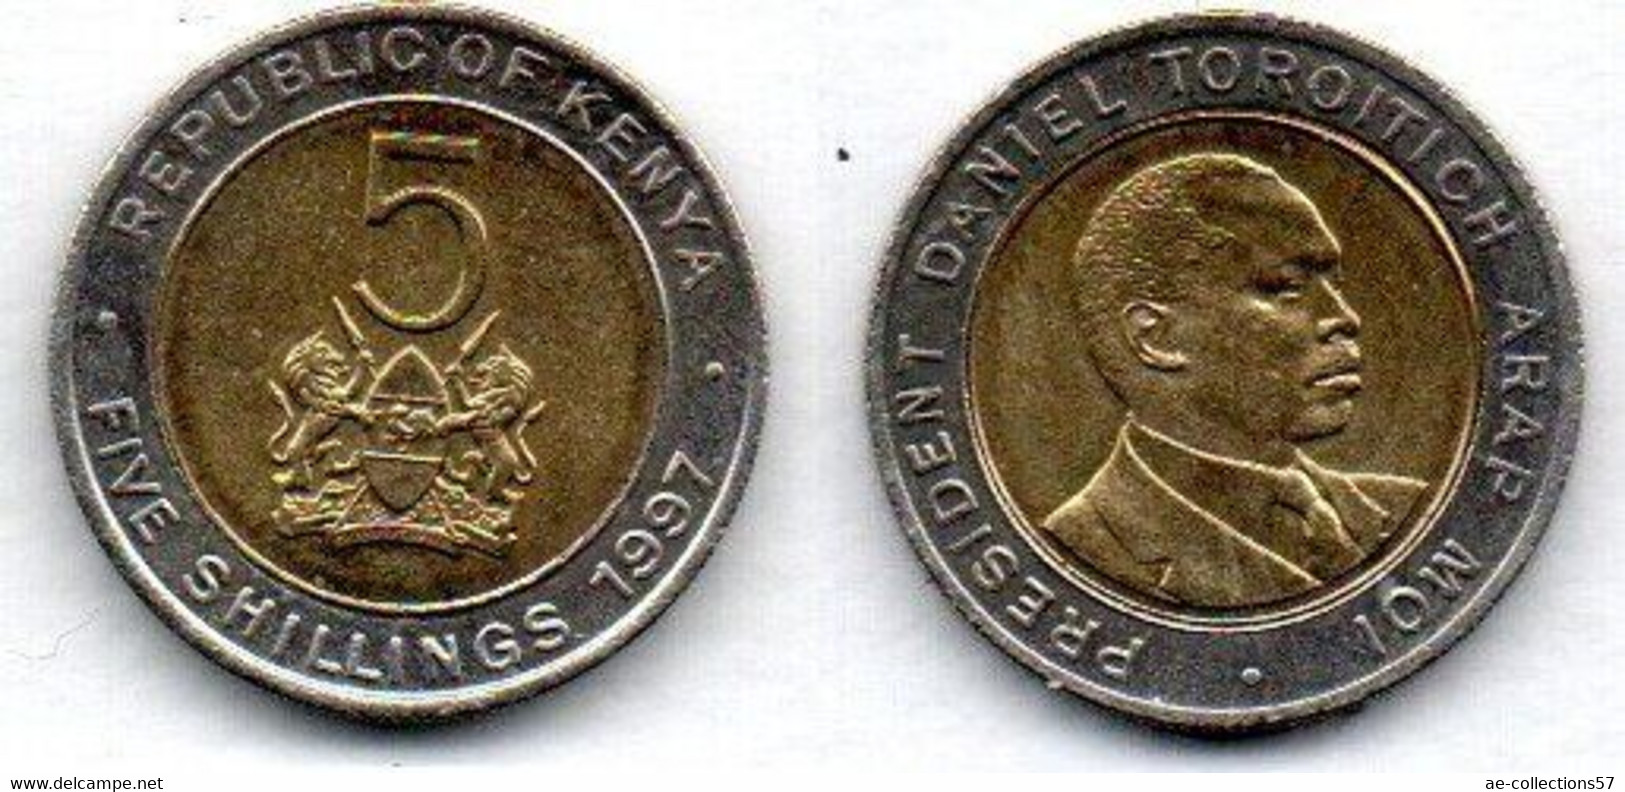 Kenya 5 Shillings 1997 SUP - Kenia